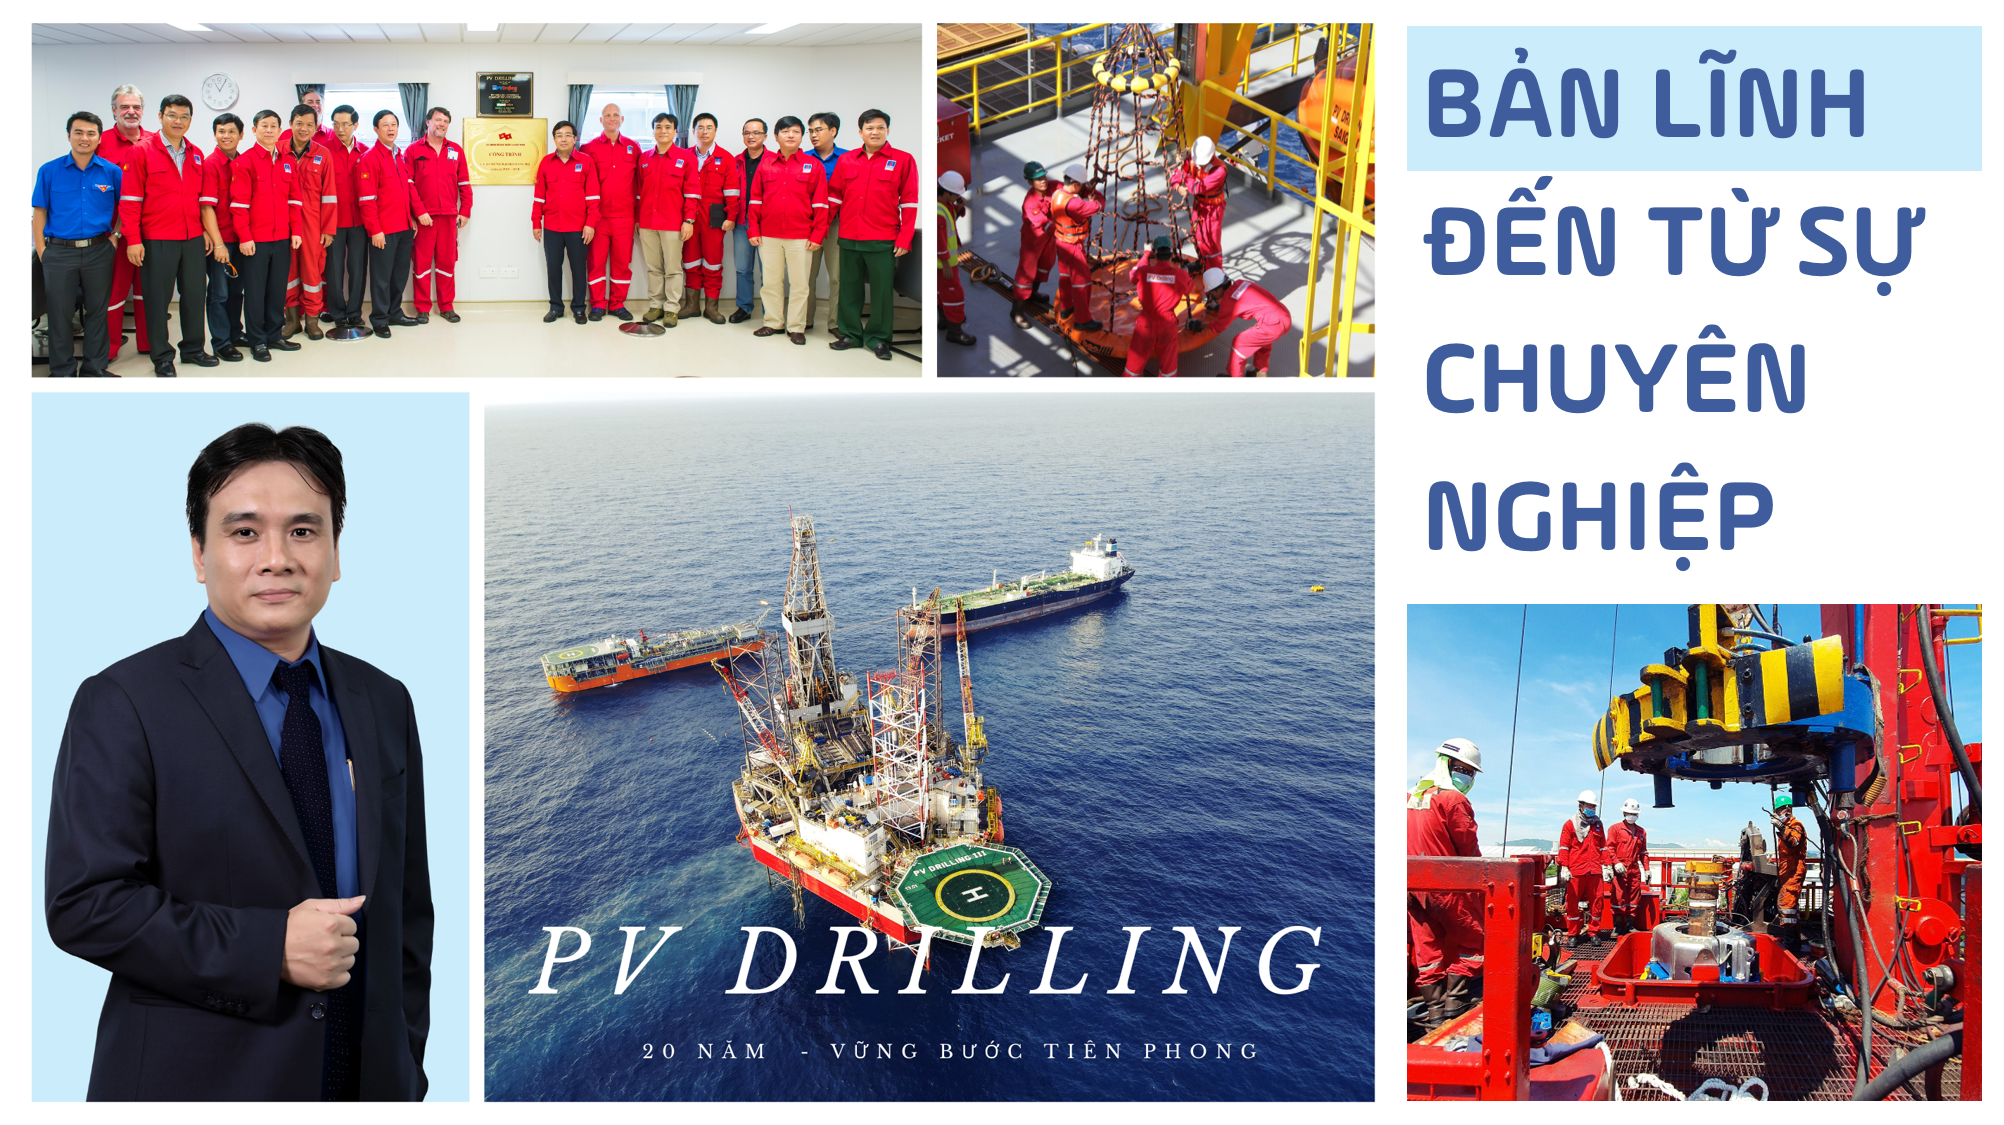 [E-Magazine] PV Drilling: Bản lĩnh đến từ sự chuyên nghiệp